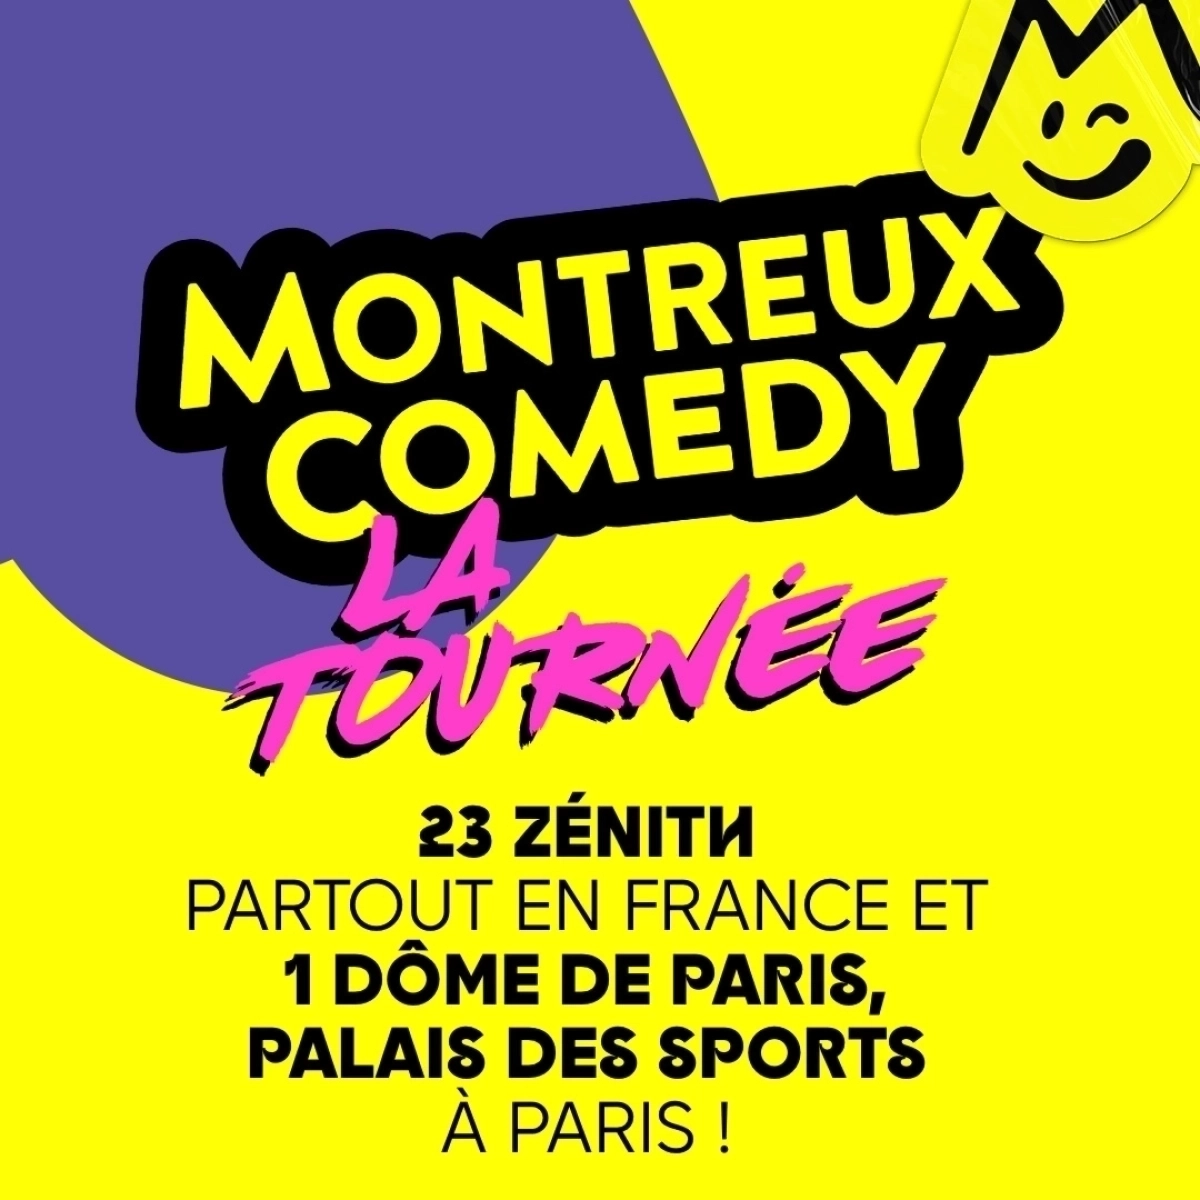 Montreux Comedy - La Tournée al Zenith Omega Toulon Tickets